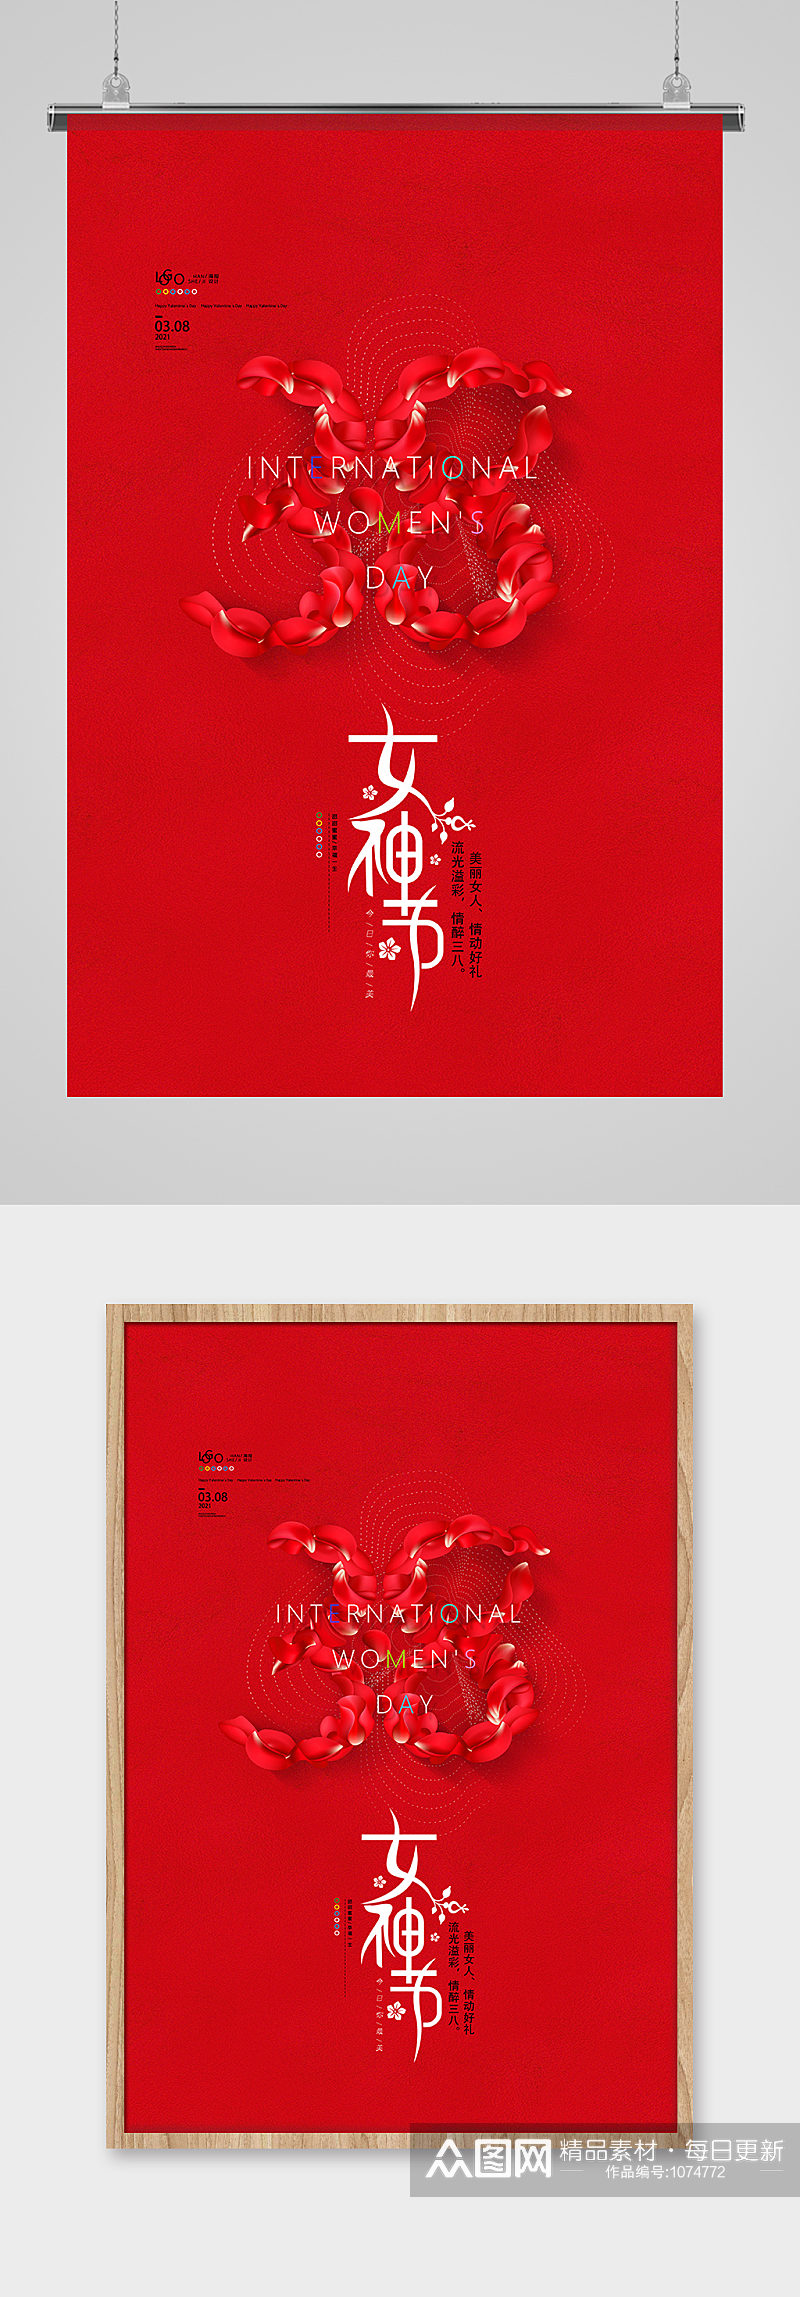 红色简洁38女神节妇女节海报设计素材